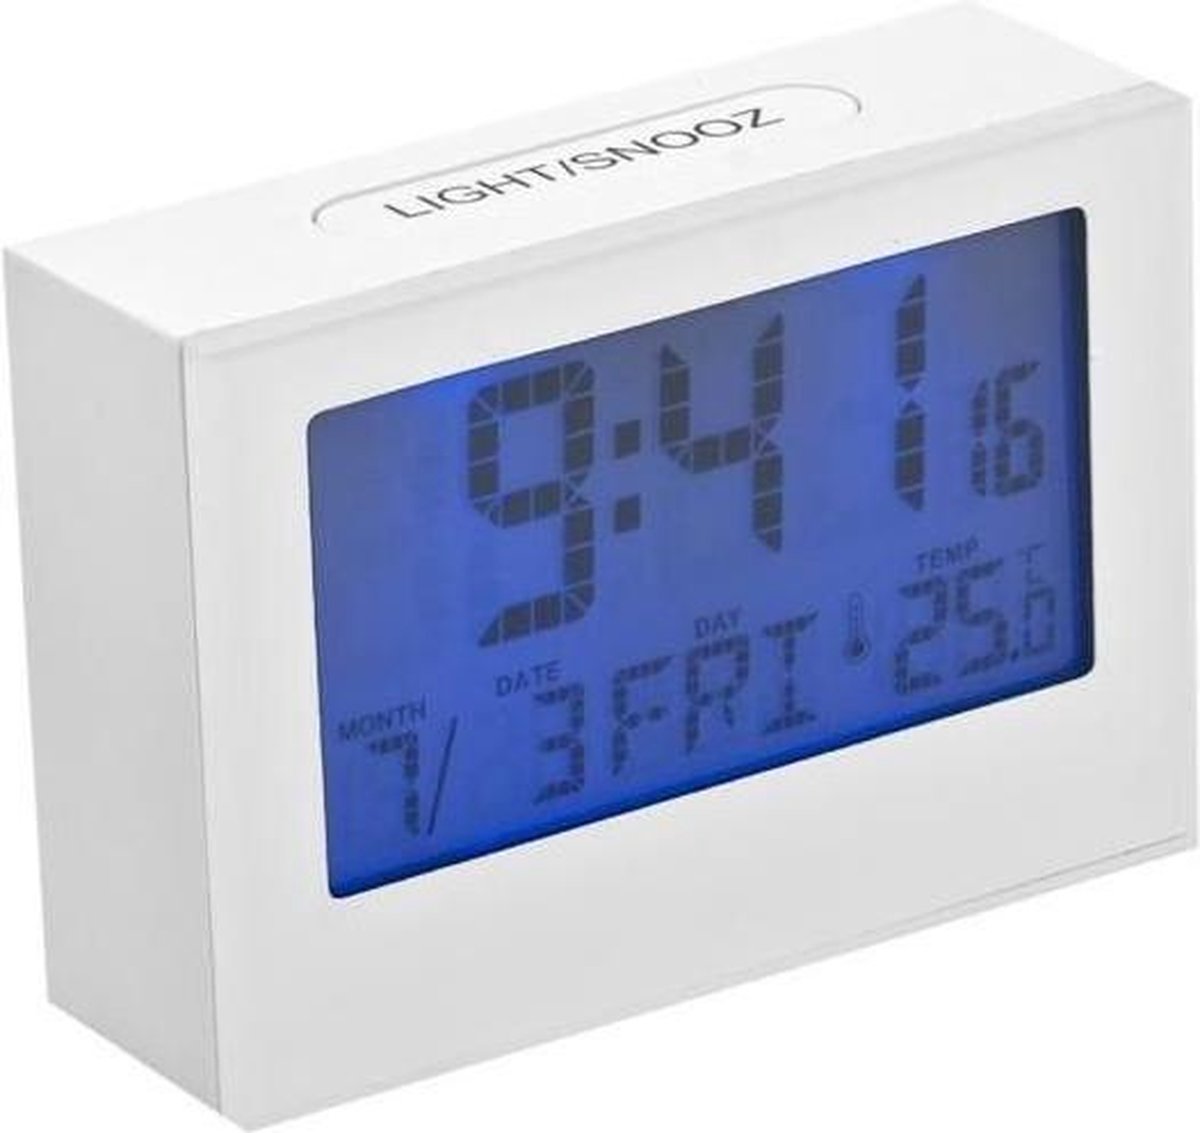 Balvi digitale wekker Brick met datum en temperatuur - Wit